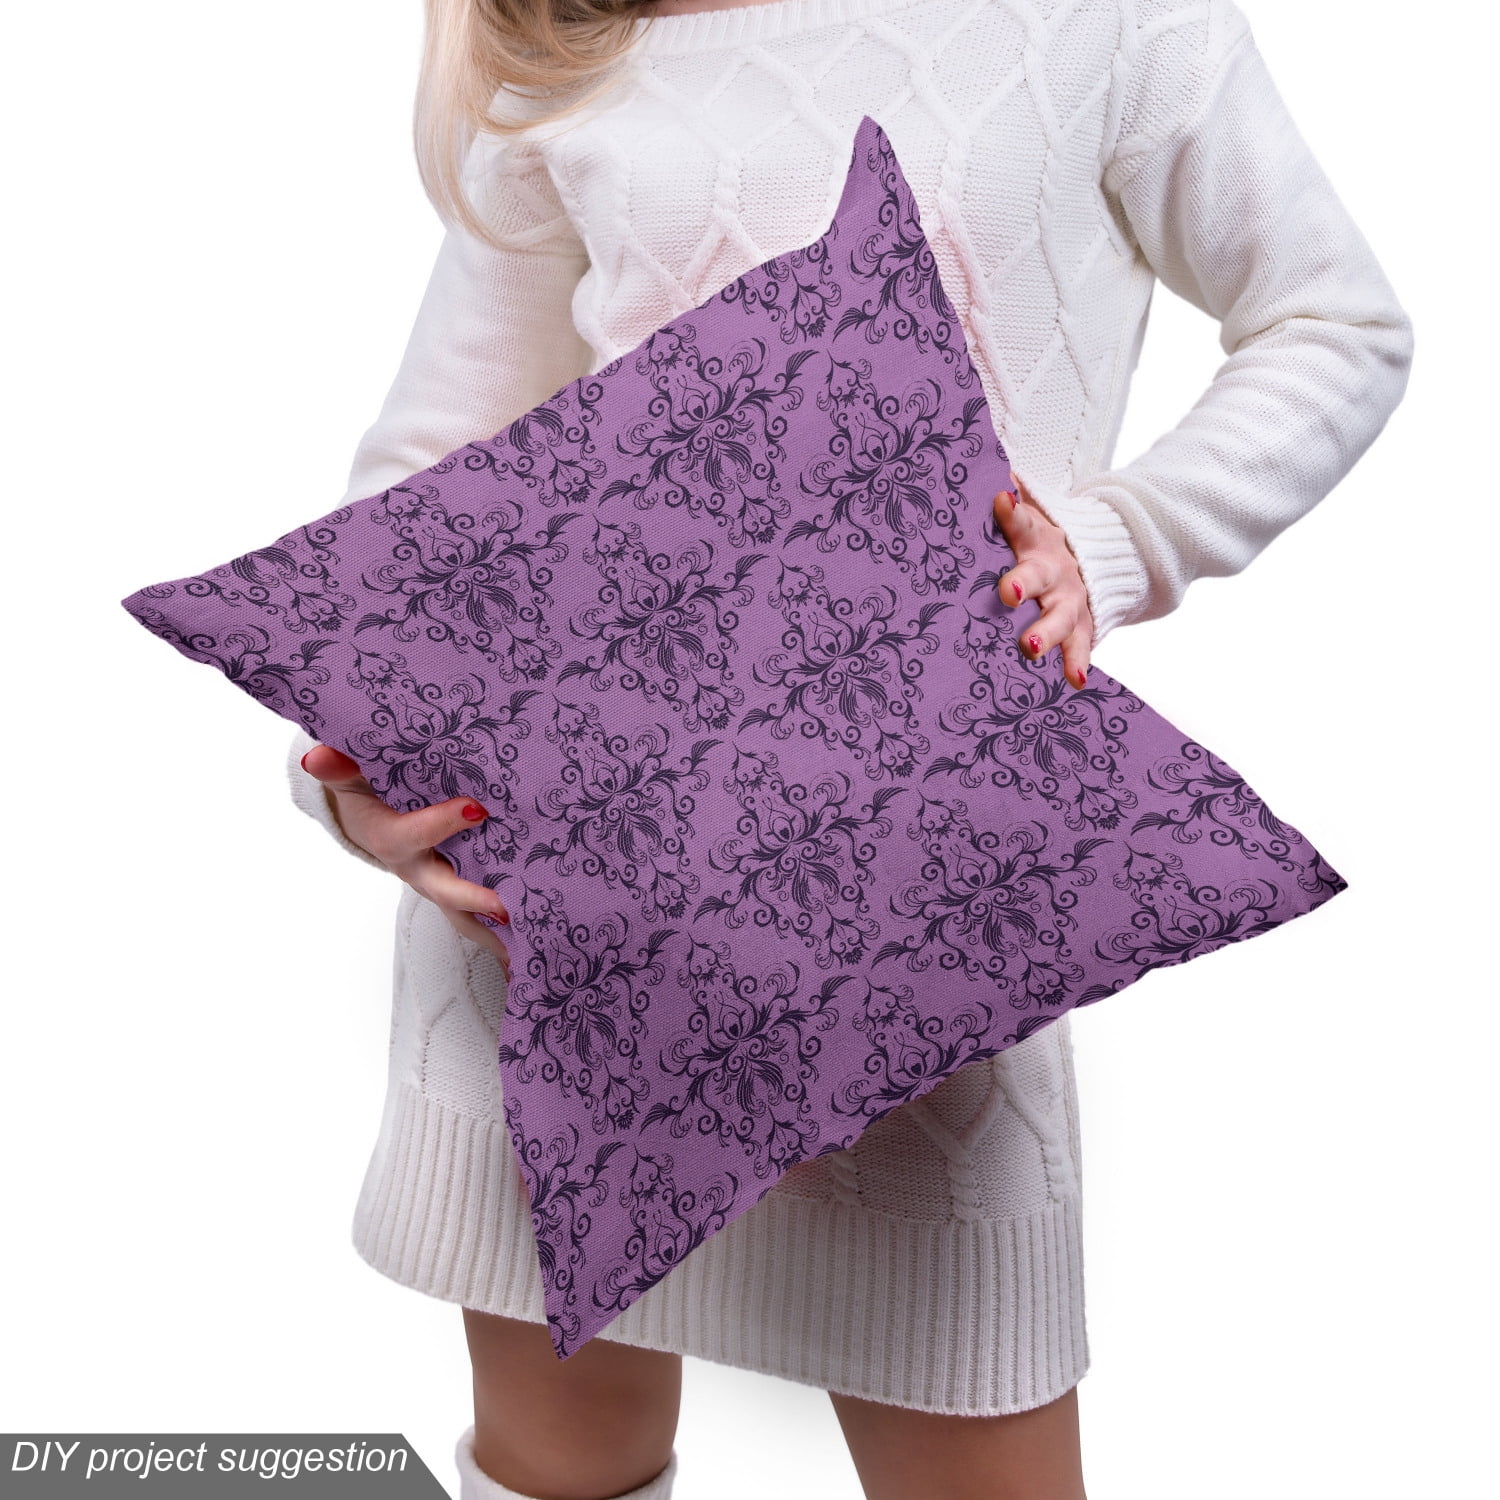 Royal Damask Flocking Velvet Upholstery Fabric / Purple/Gold